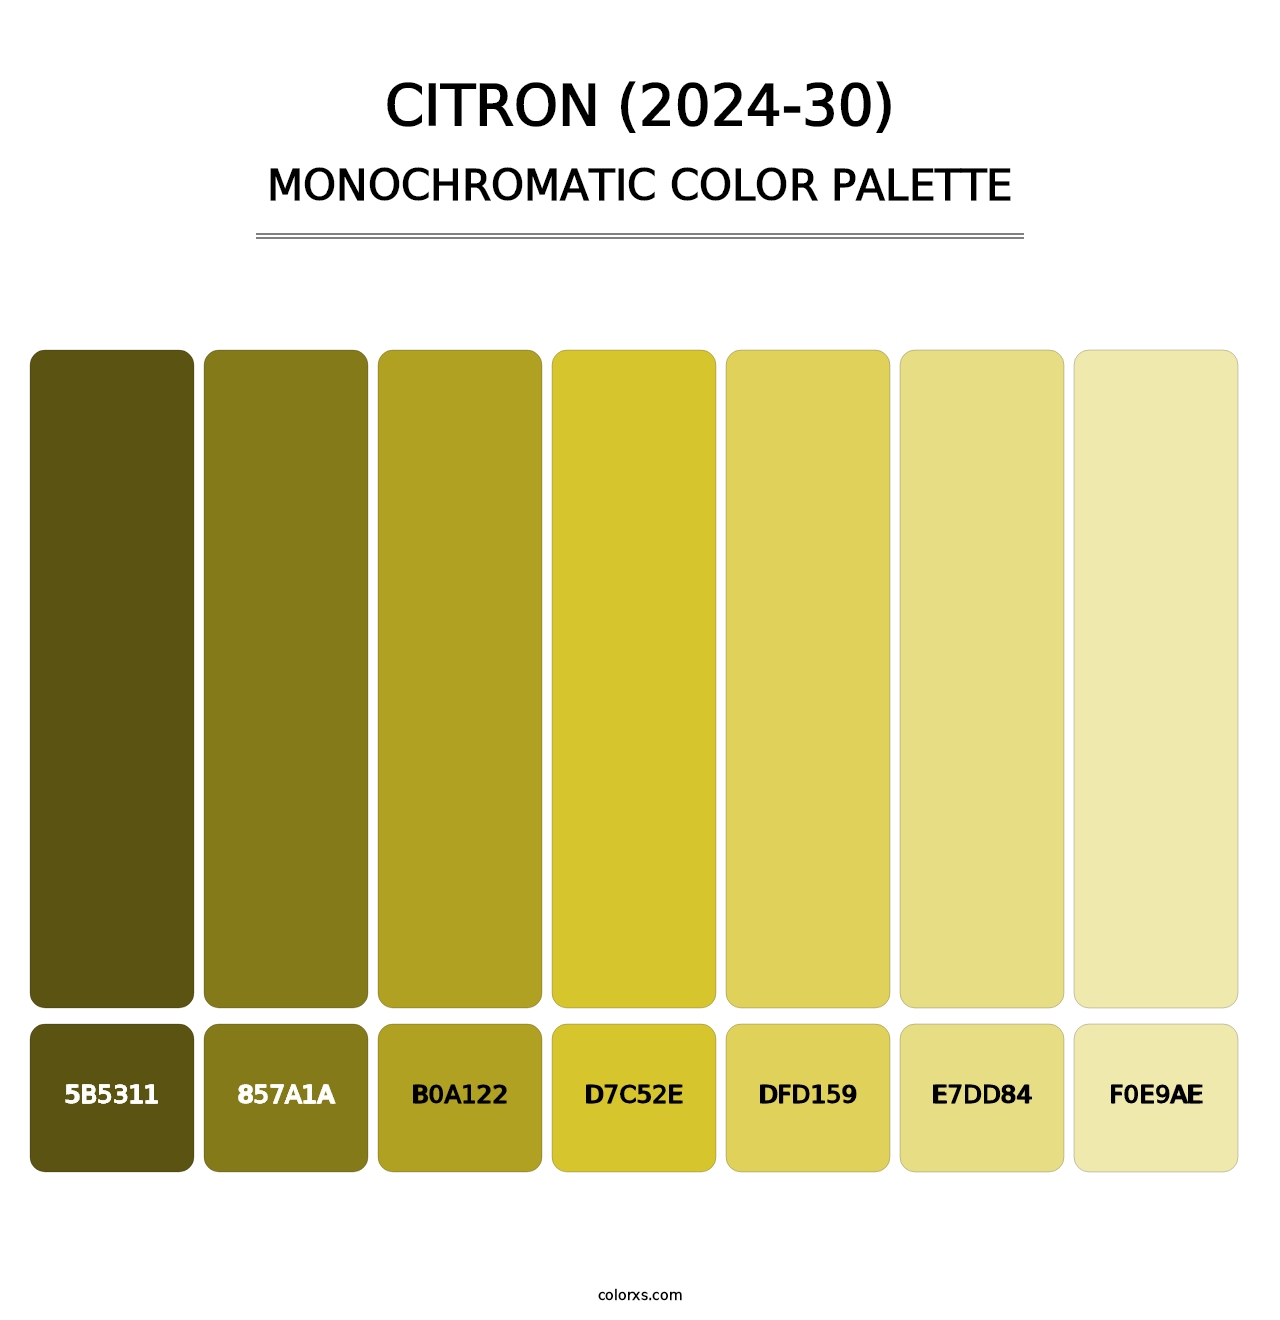 Citron (2024-30) - Monochromatic Color Palette